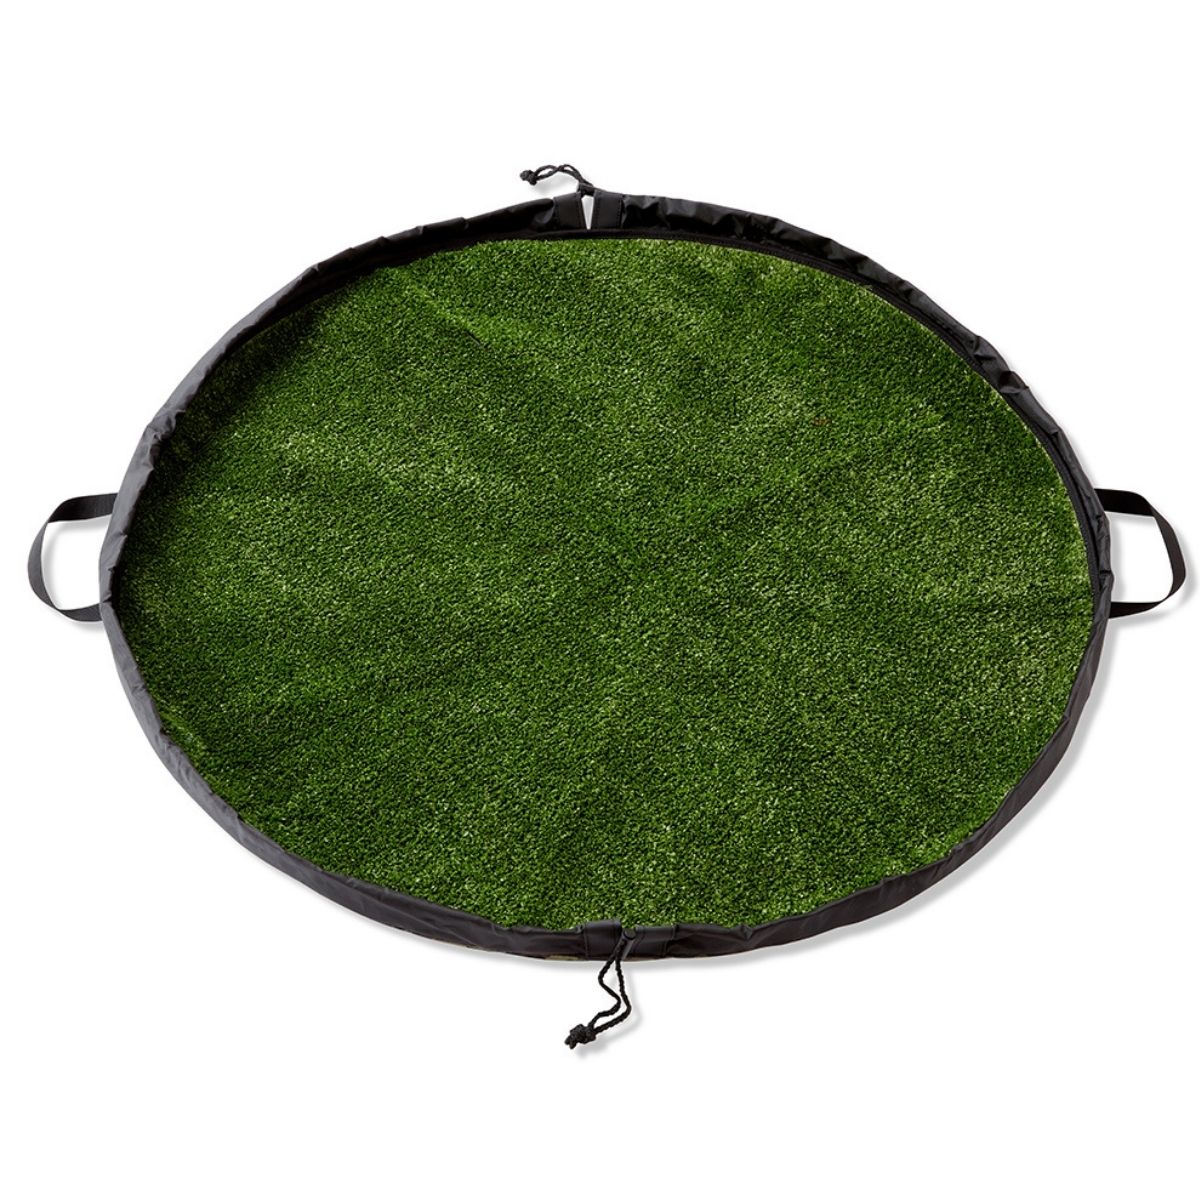 Grass changing mat camo